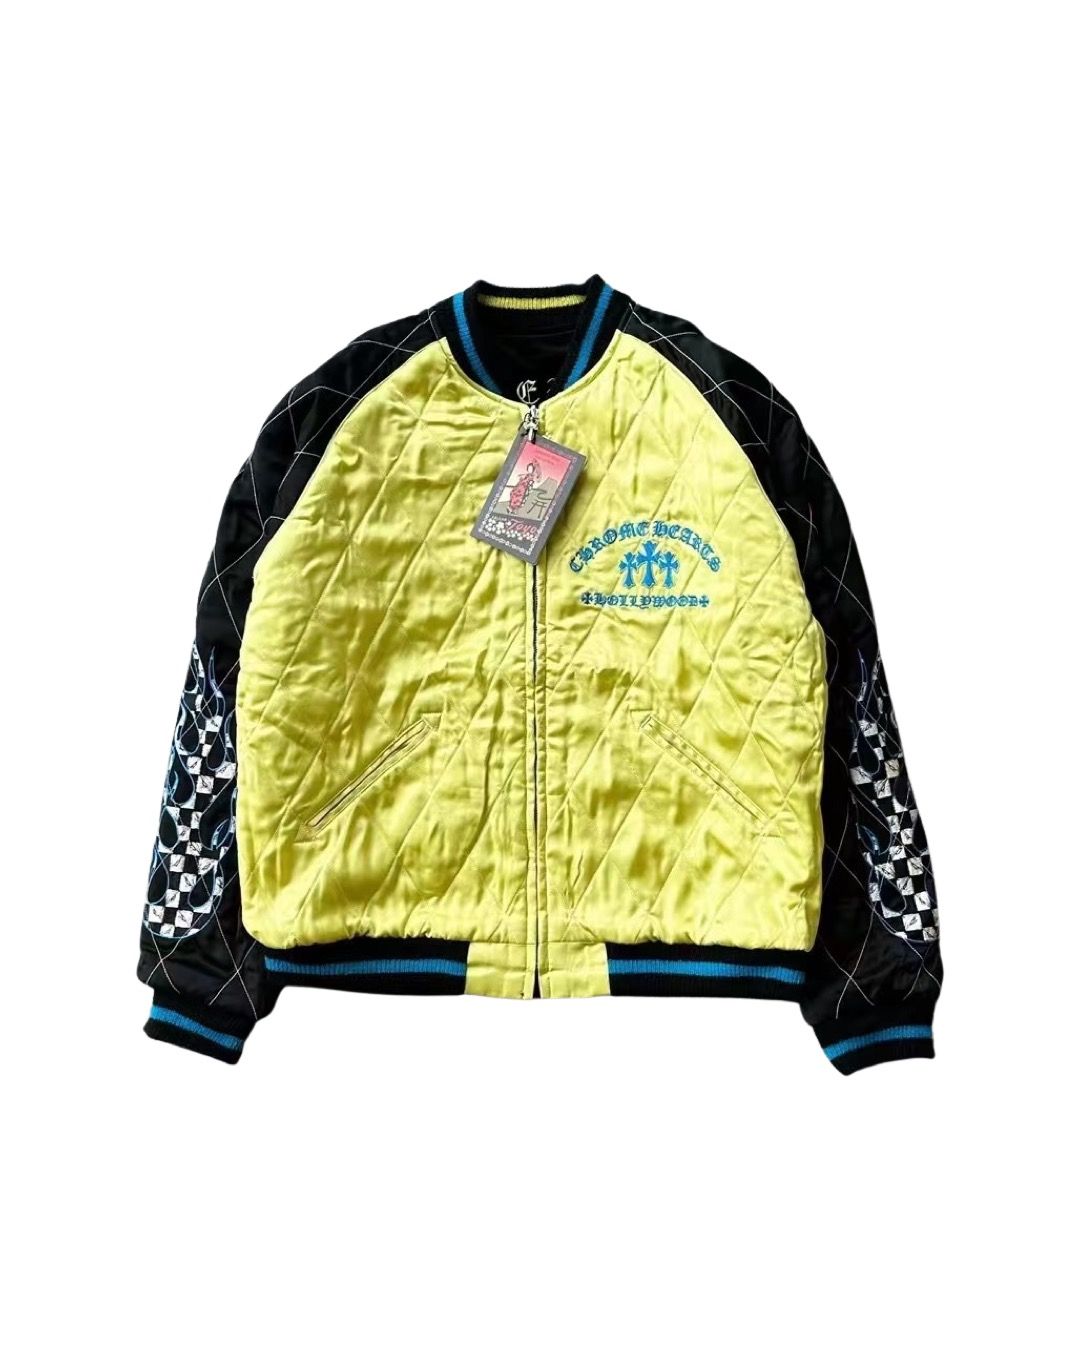 Matty boy flaming youth reversible souvenir jacket - 1